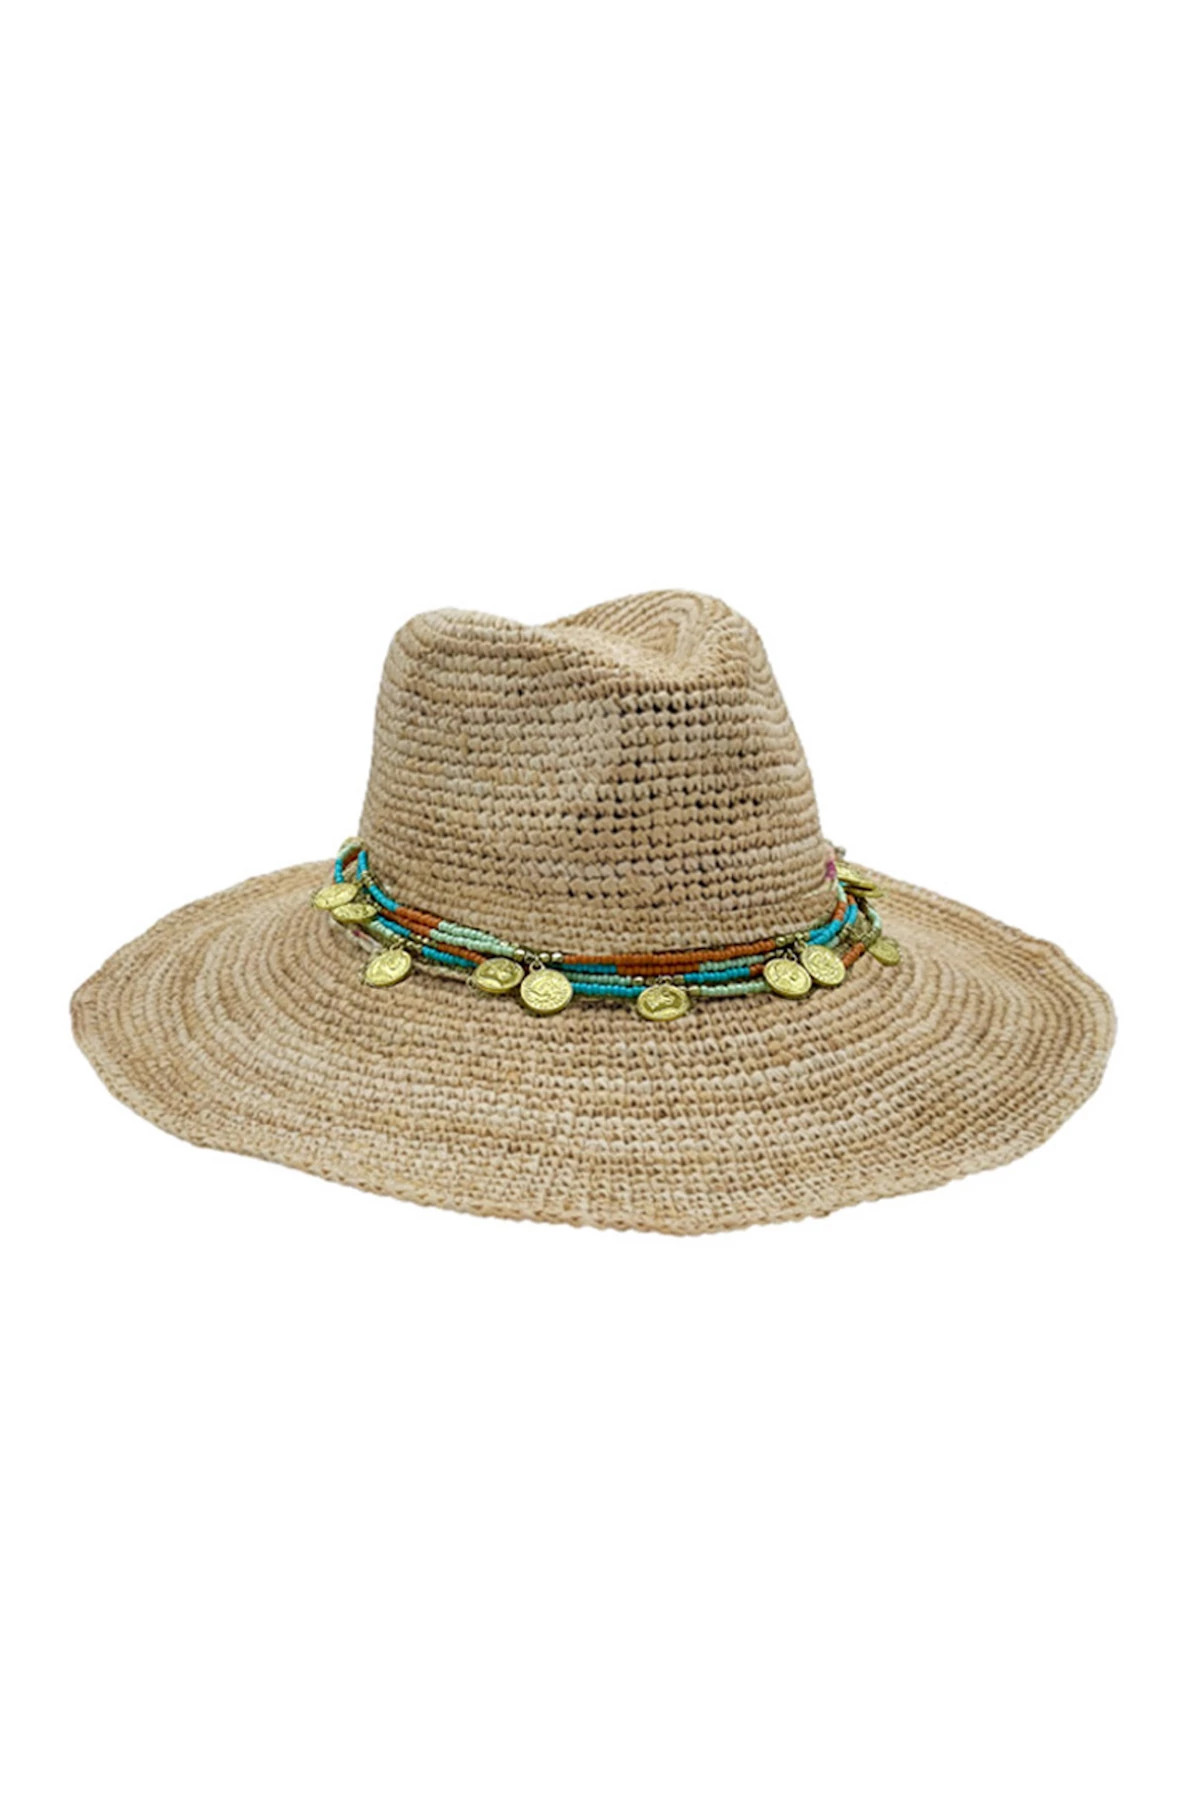 NATURAL Ibiza Cowboy Hat image number 1